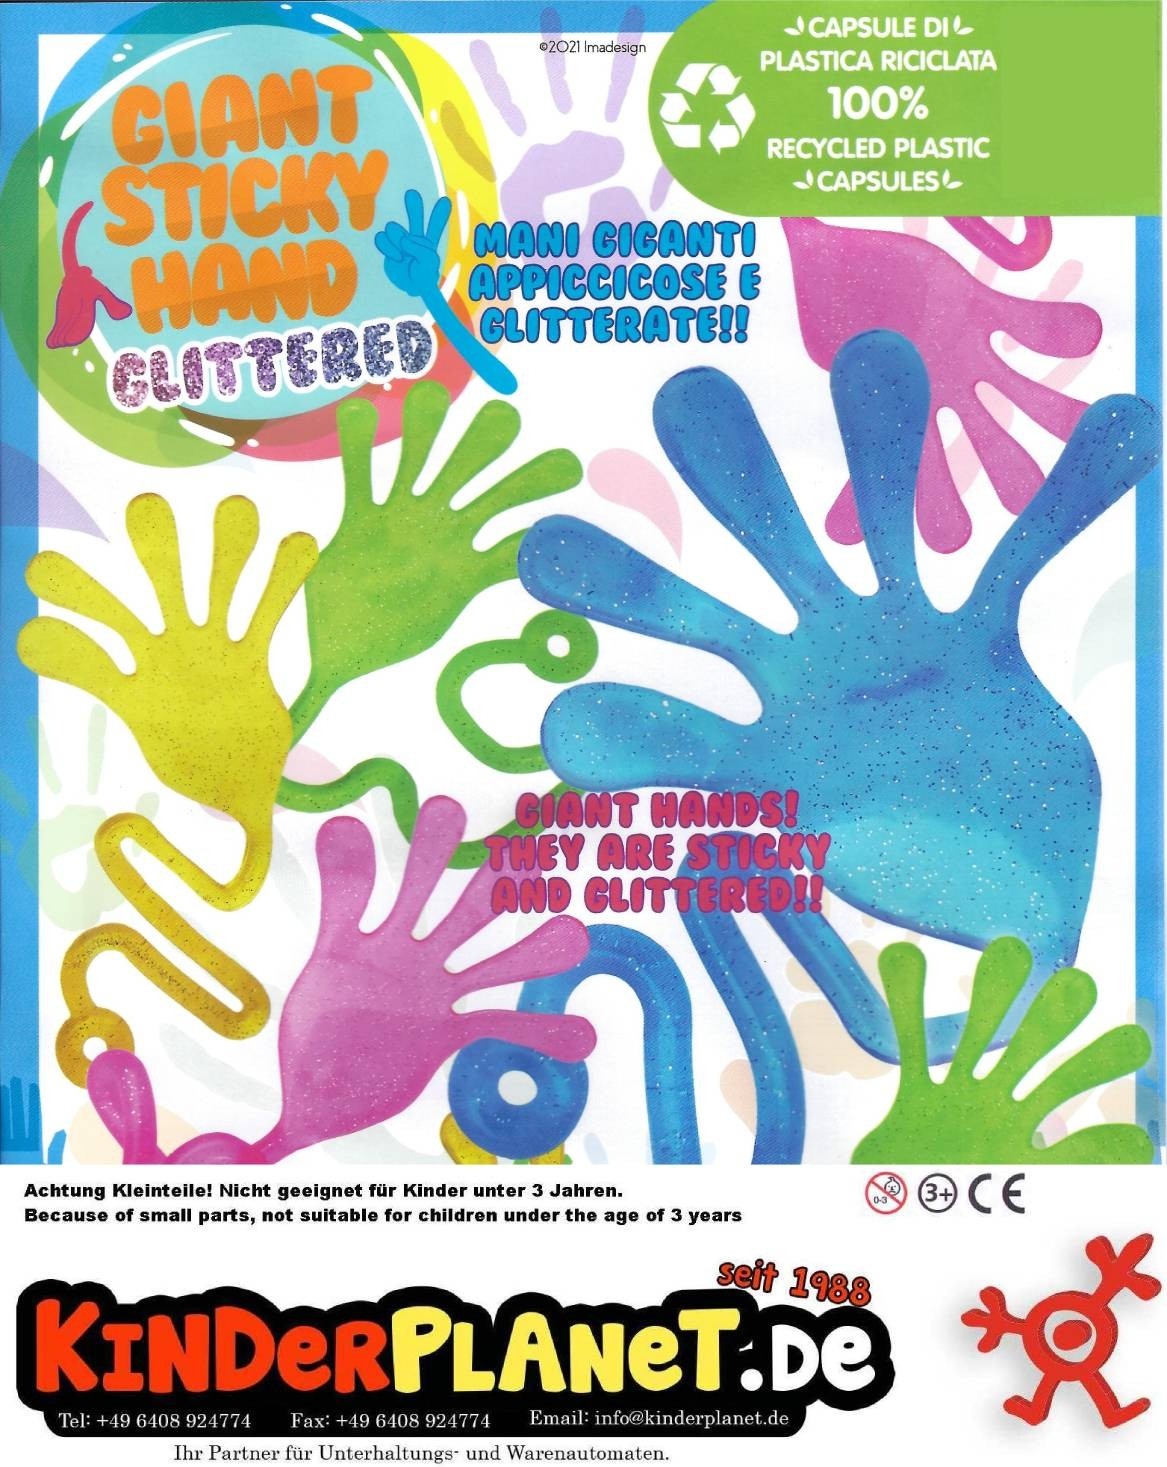 Giant Sticky Hand Glitter in 55mm Kapsel